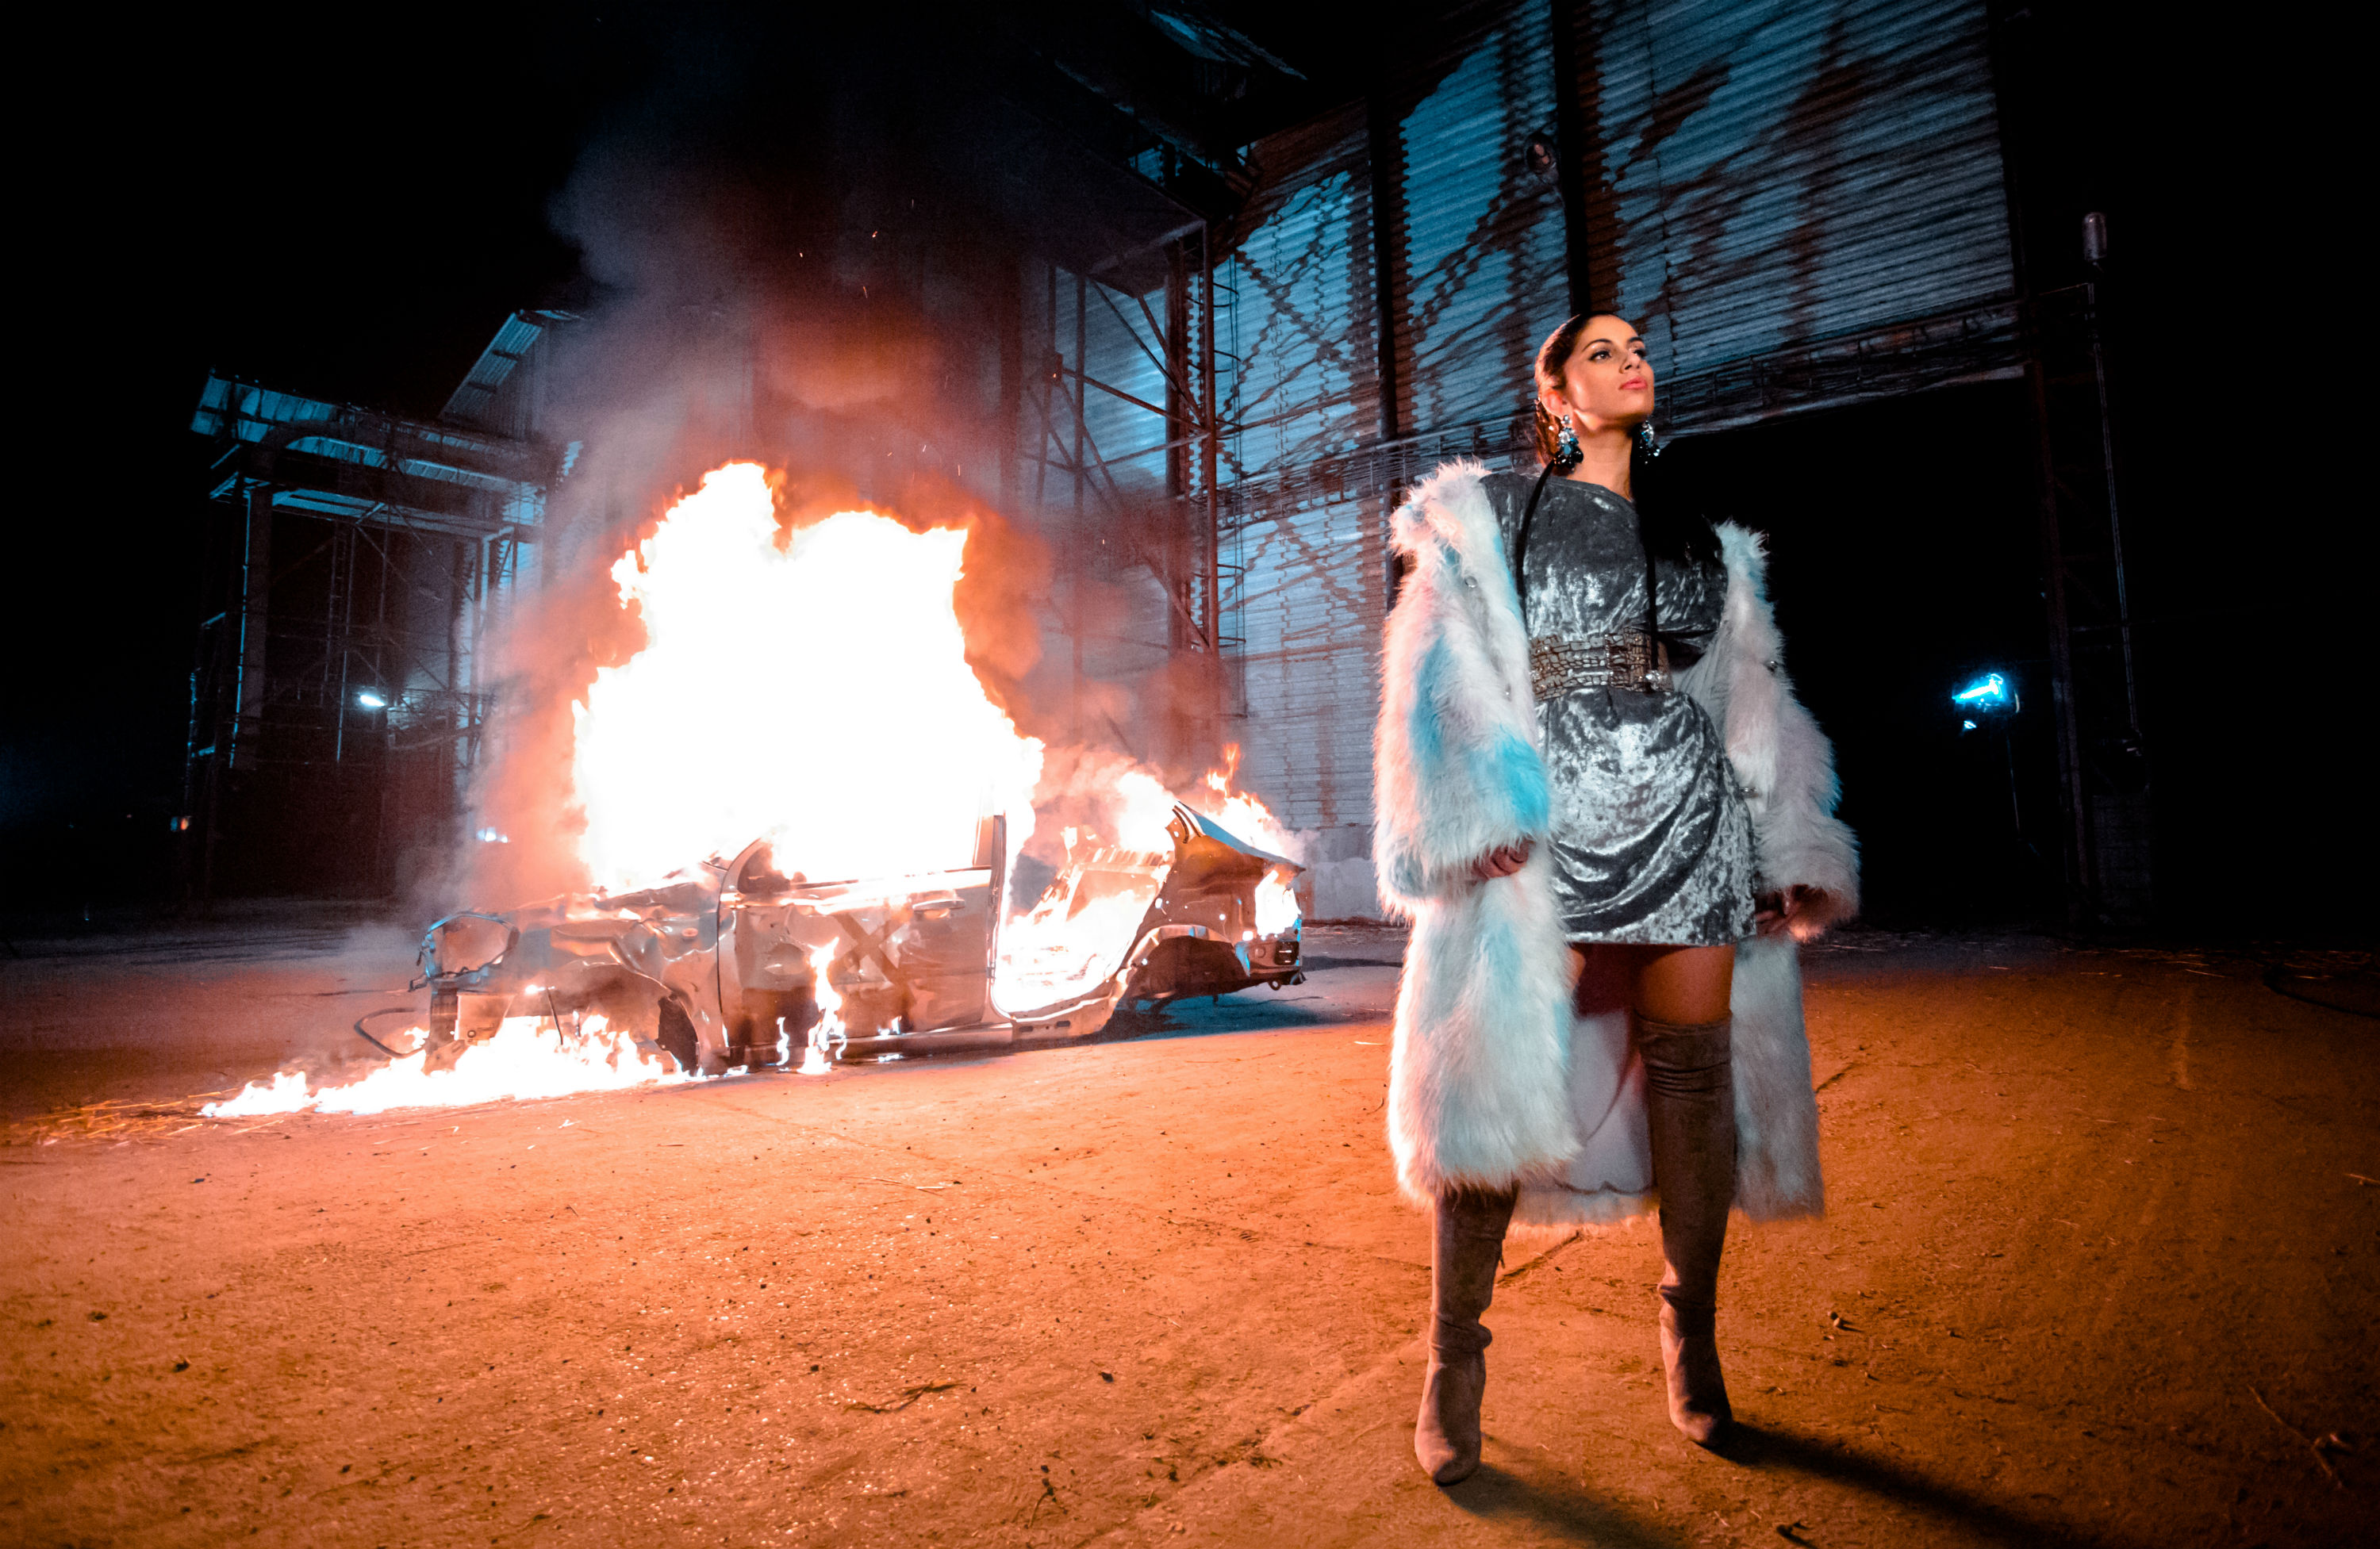 Nagyon tüzes videoklipet forgatott Radics Gigi – fotók